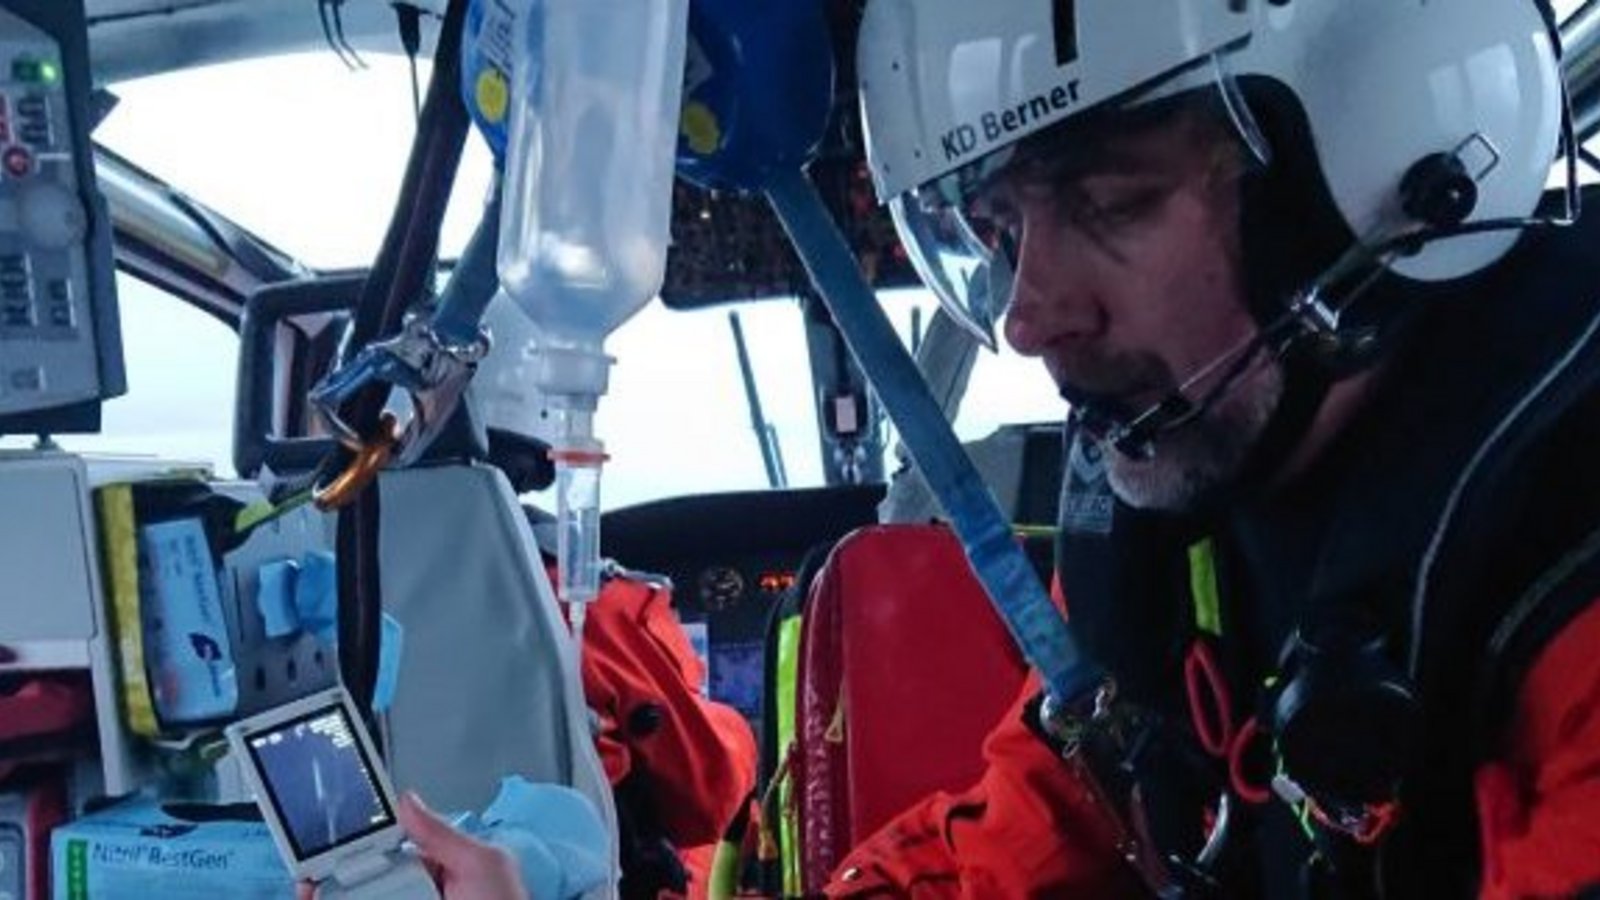 Berner untersucht einen Patienten im Hubschrauber per Ultraschall. Foto: p